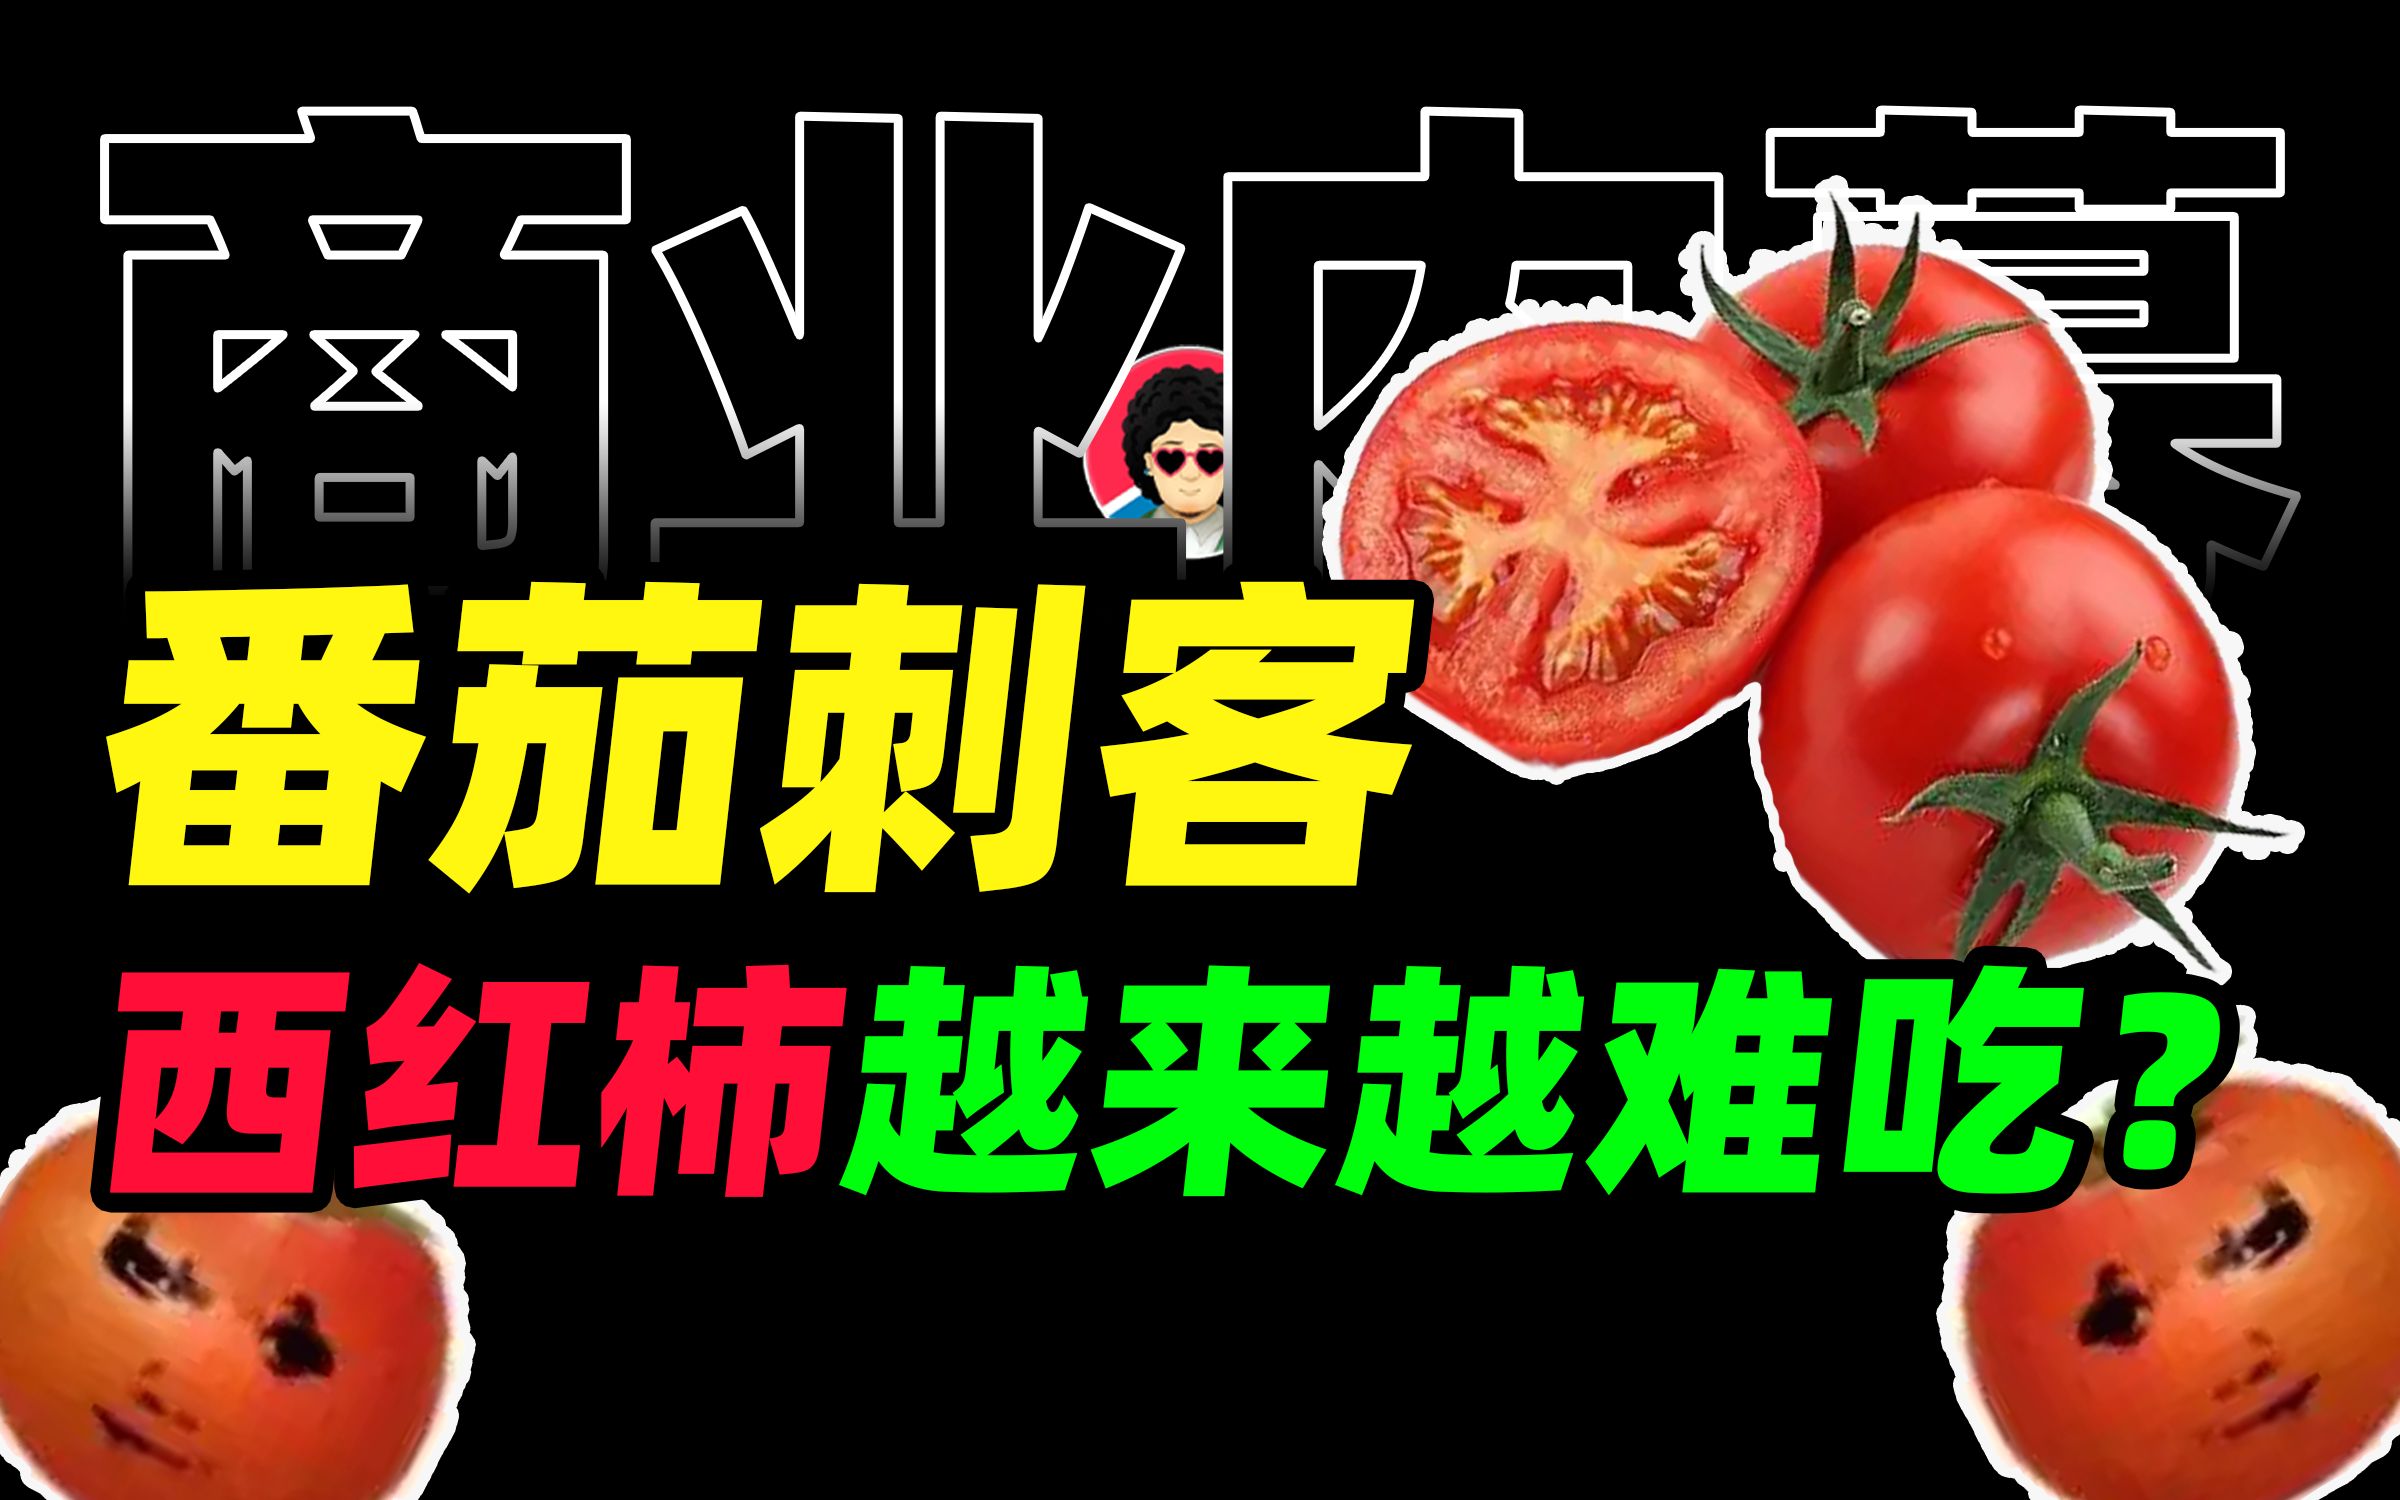 西红柿汁图片素材-编号06264920-图行天下